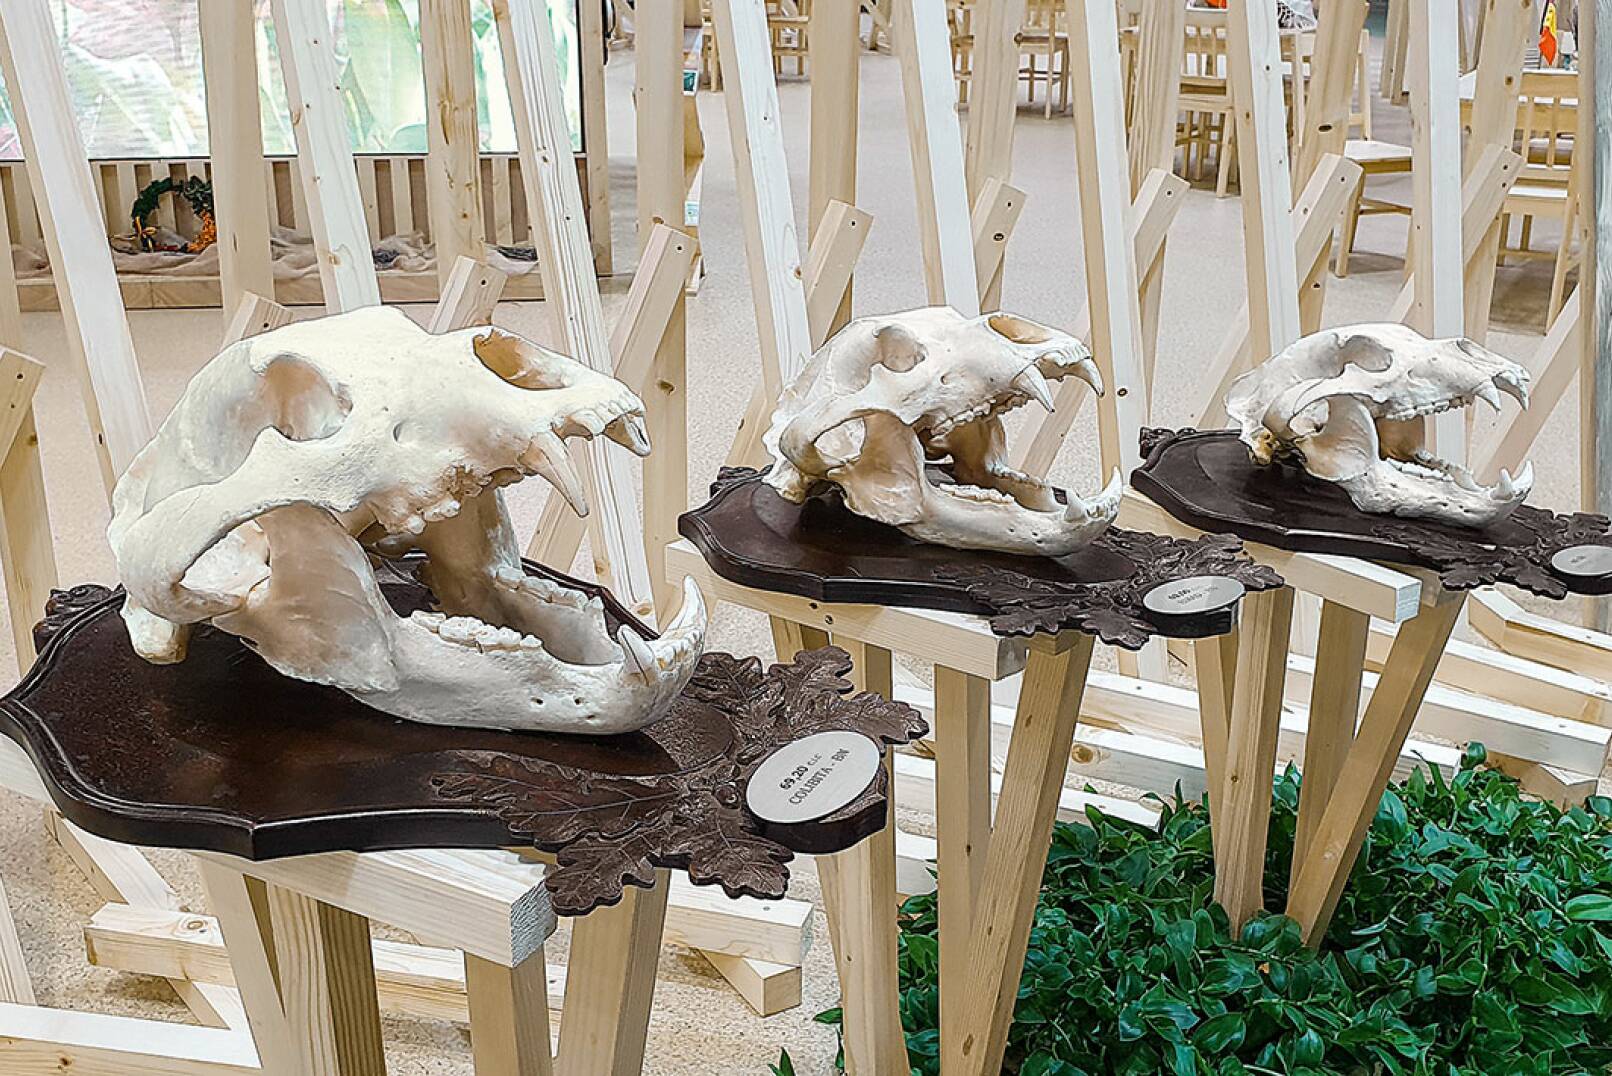 Erkennen Sie die Schädel? Diese waren auf dem rumänischen Messestand zu sehen und stammen von Braunbären. - © Michaela Landbauer